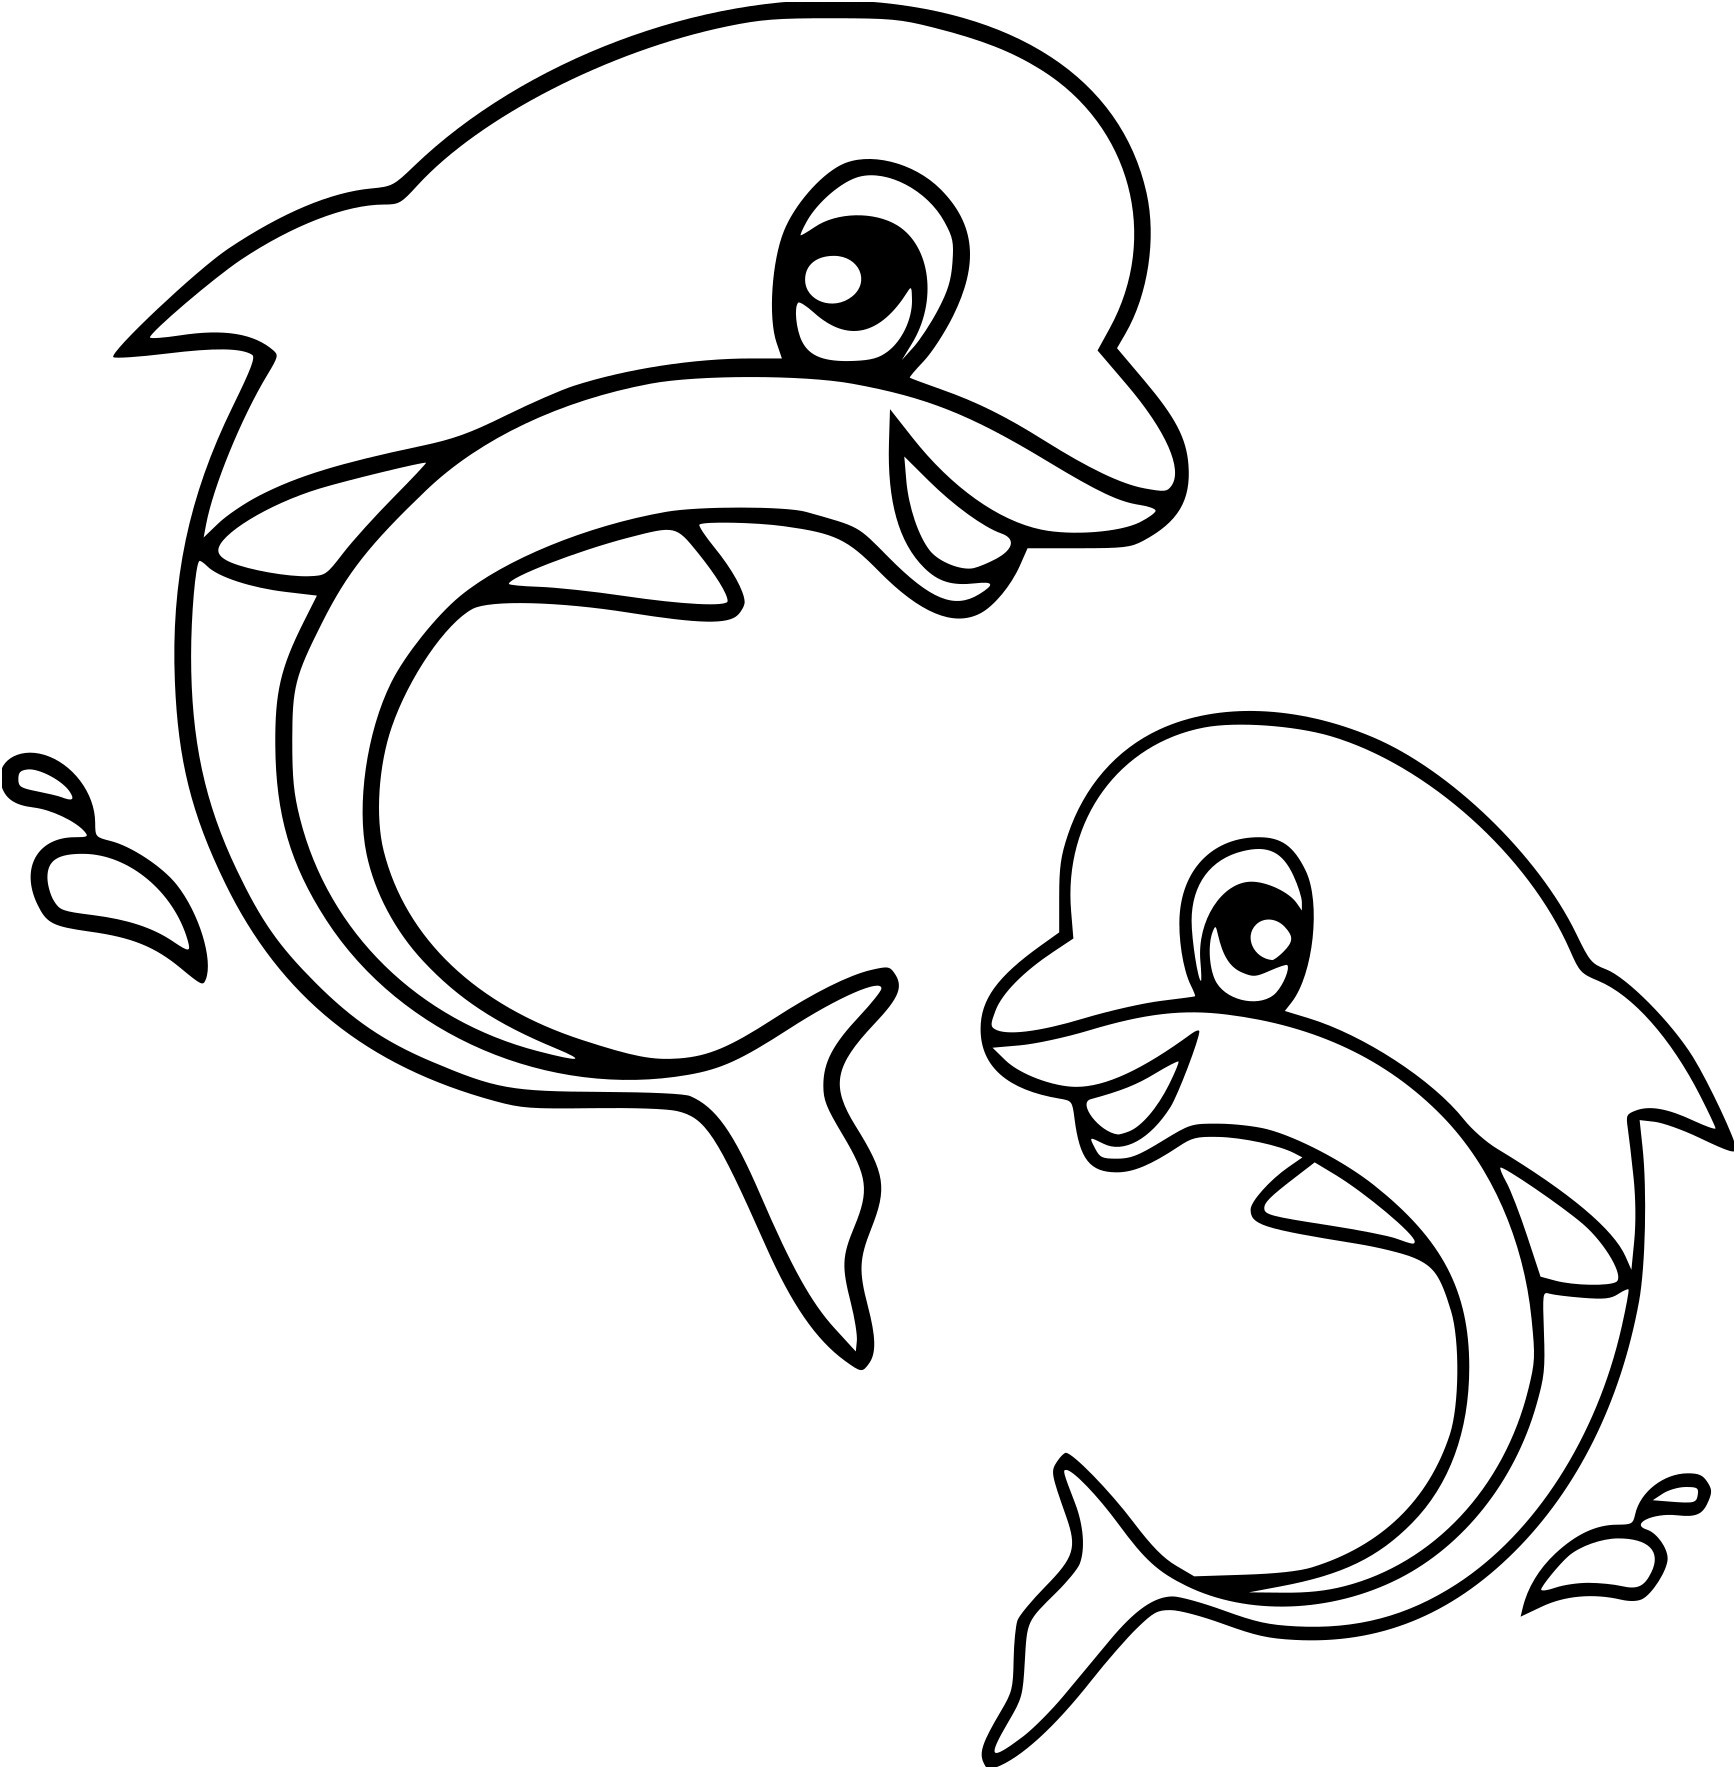 dessin a colorier gratuit de dauphin